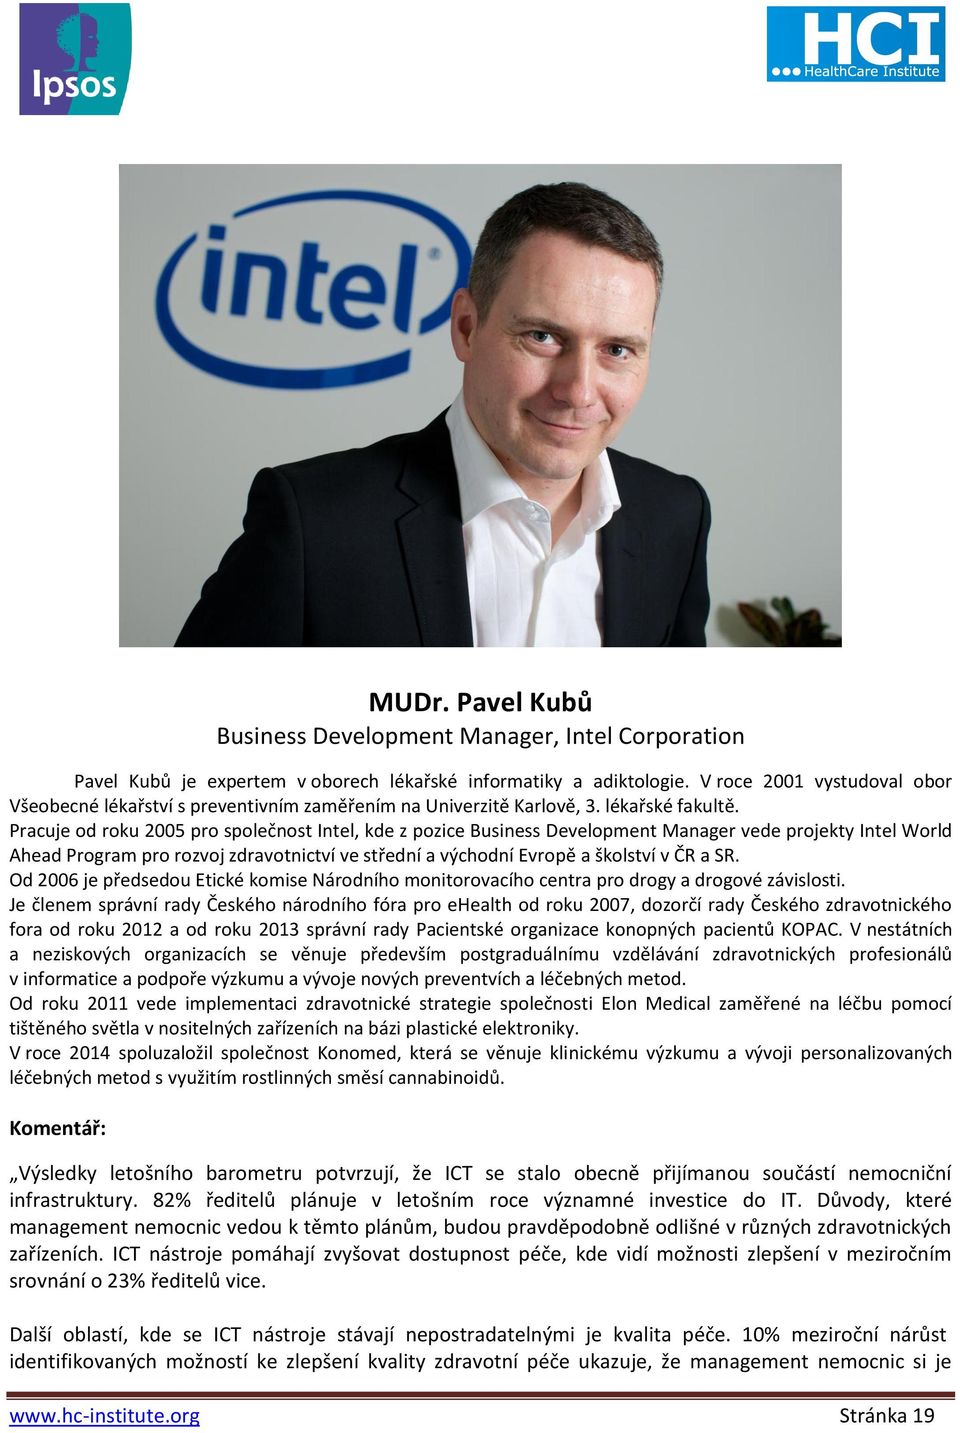 Pracuje od roku 2005 pro společnost Intel, kde z pozice Business Development Manager vede projekty Intel World Ahead Program pro rozvoj zdravotnictví ve střední a východní Evropě a školství v ČR a SR.